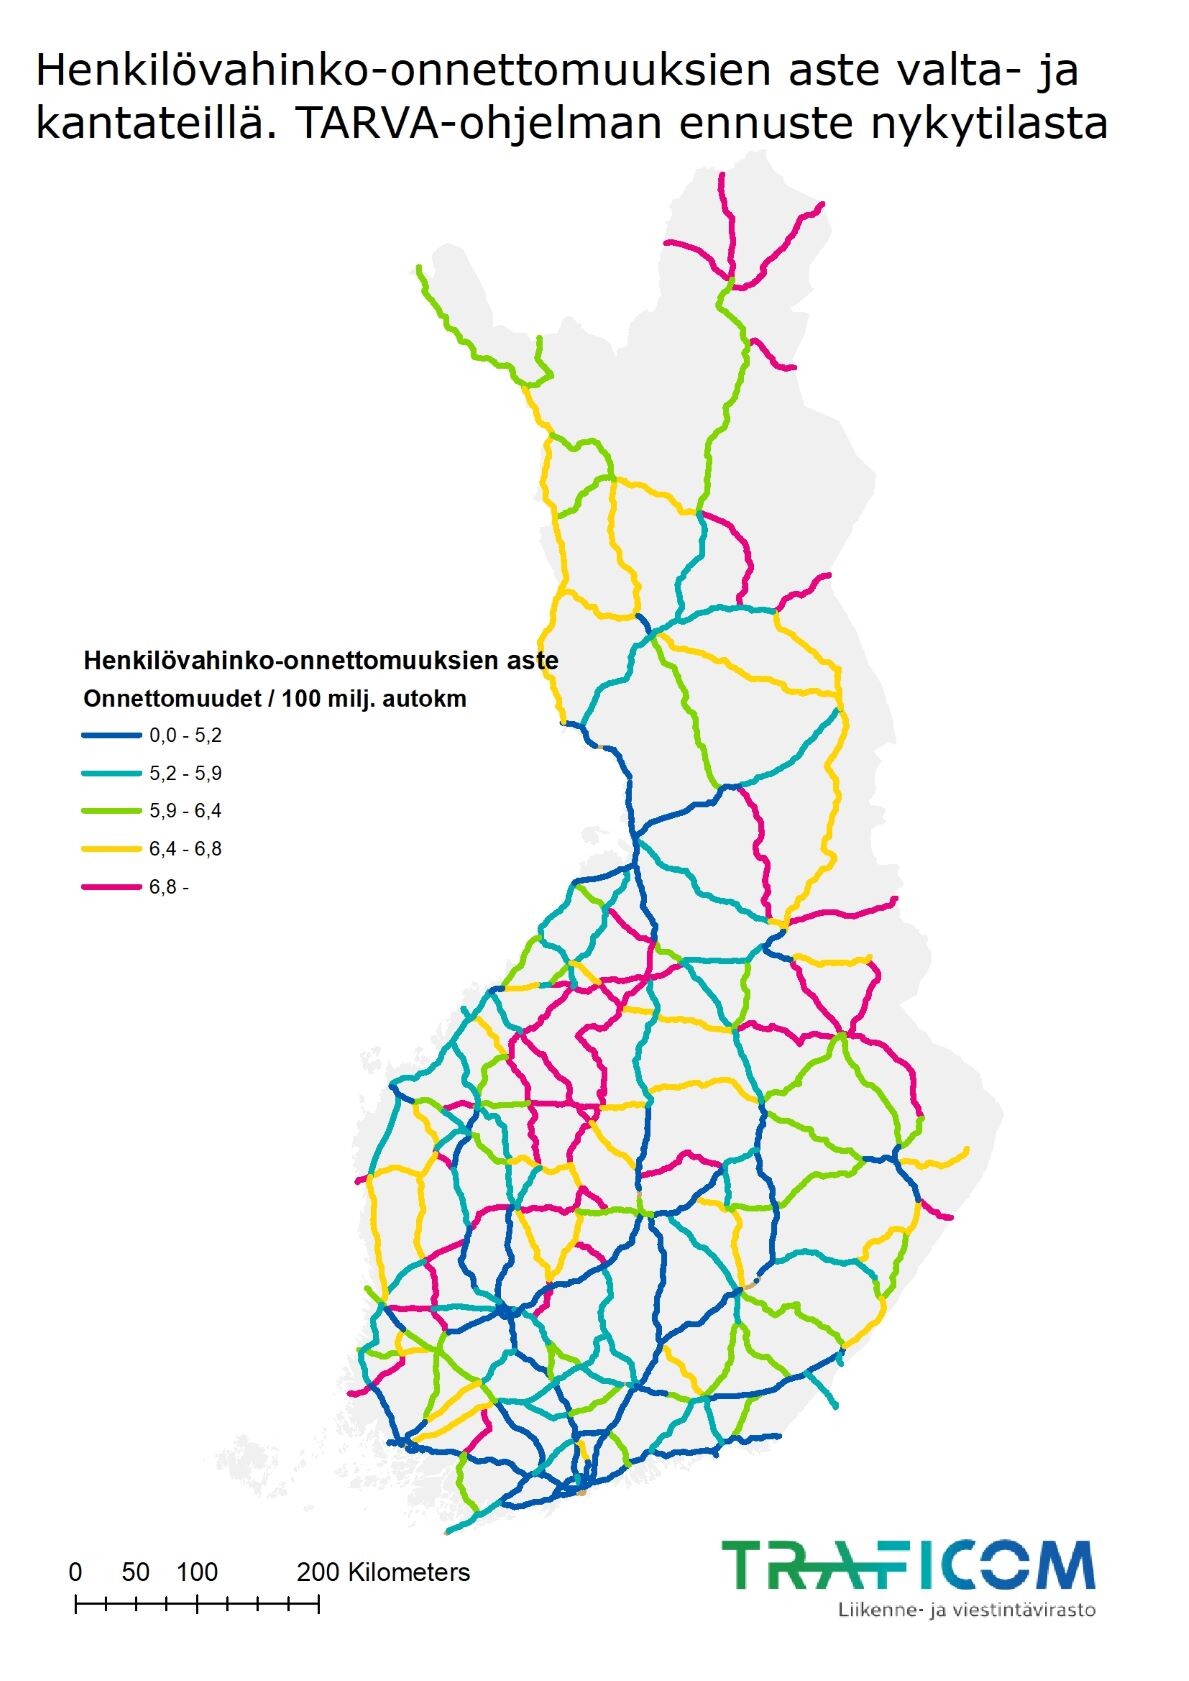 Kartta henkilövahinko-onnettomuuksista suhteessa liikennesuoritteeseen pääteillä